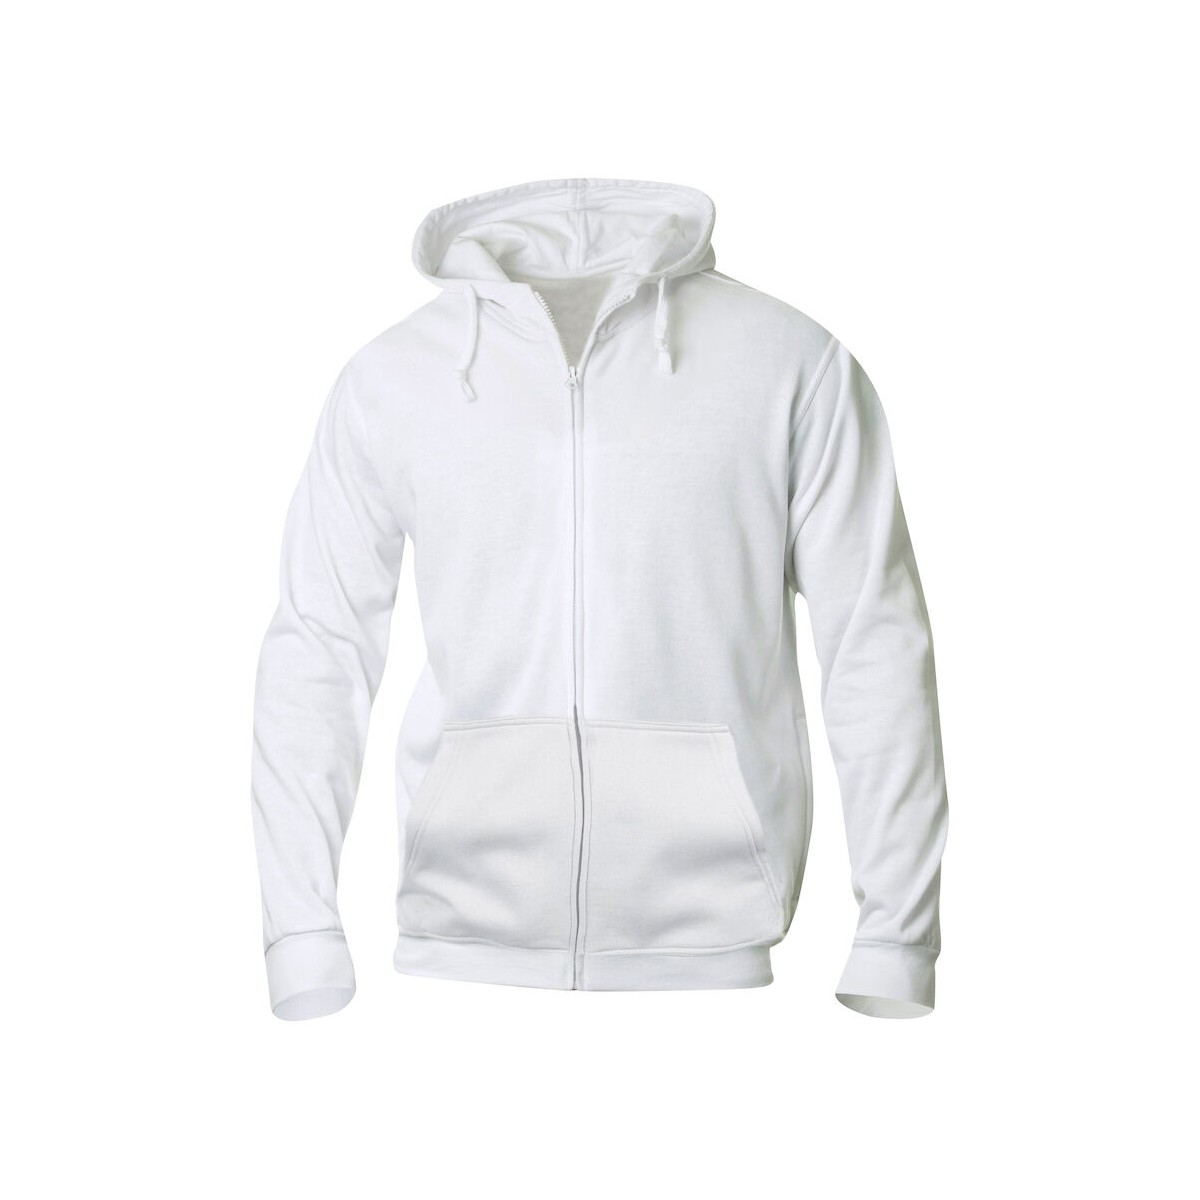 Sweatshirt à capuche zippé - polyester et coton - CLIQUE - Personnalisable en petite quantité